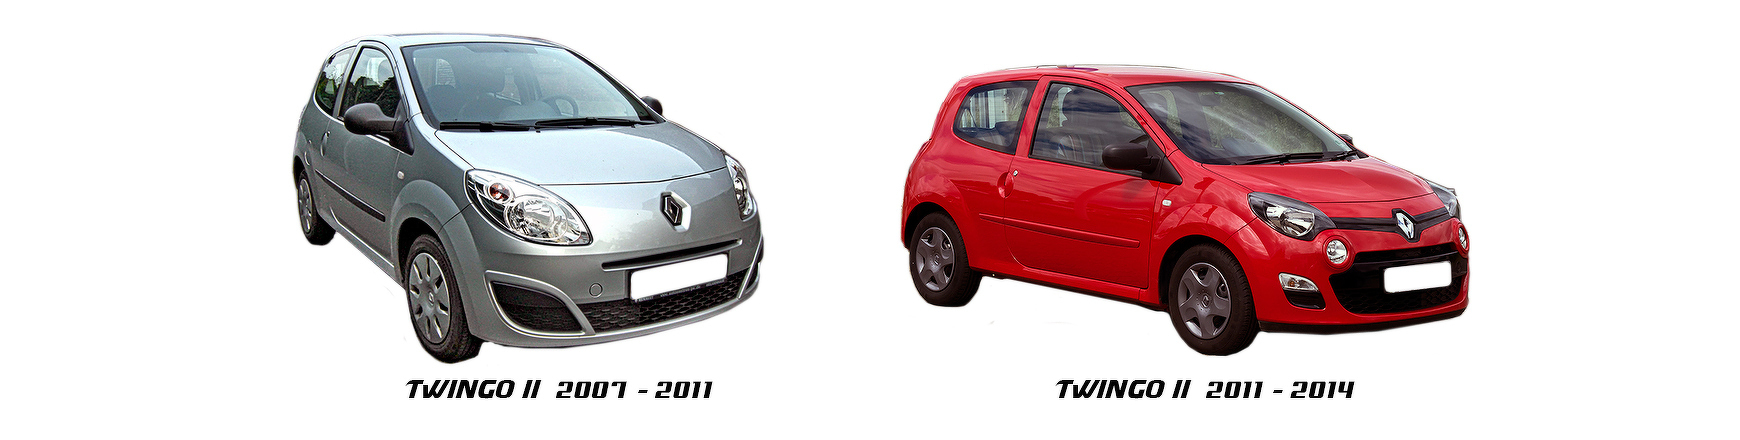 Piezas y Recambios de Renault Twingo II (N) de 2007 a 2011 | Veramauto.es